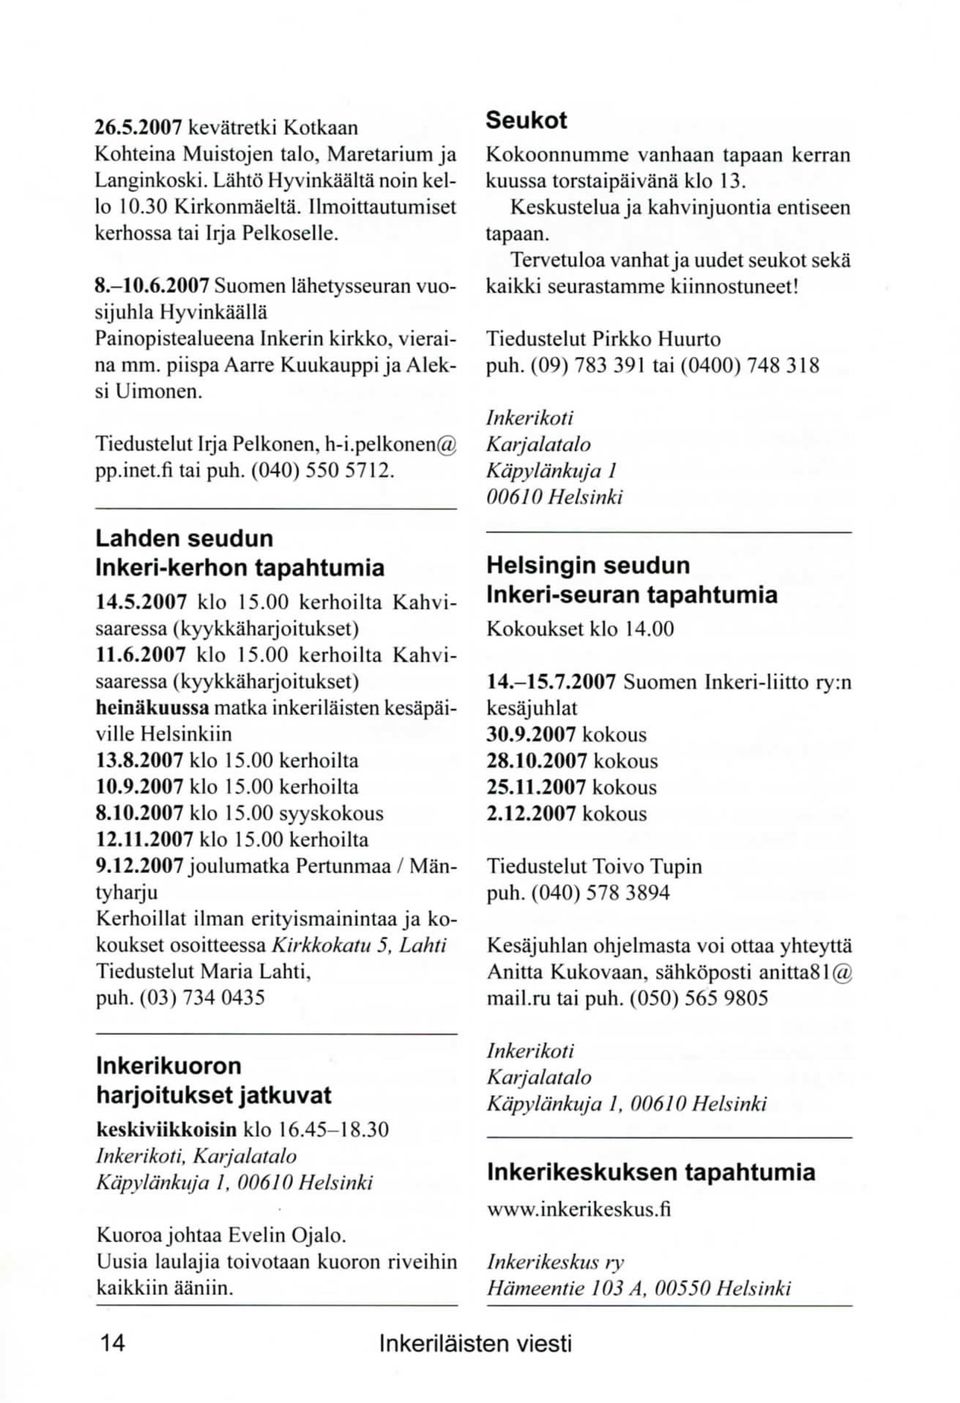 00 kerhoilta Kahvisaaressa {kyykkaharjoitukset) 11.6.2007 klo 15.00 kerhoilta Kahvisaaressa (kyykkaharjoitukset) heinakuussa matka inkerilaisten kesapaiville Helsinkiin 13.8.2007 klo 15.00 kerhoilta 10.